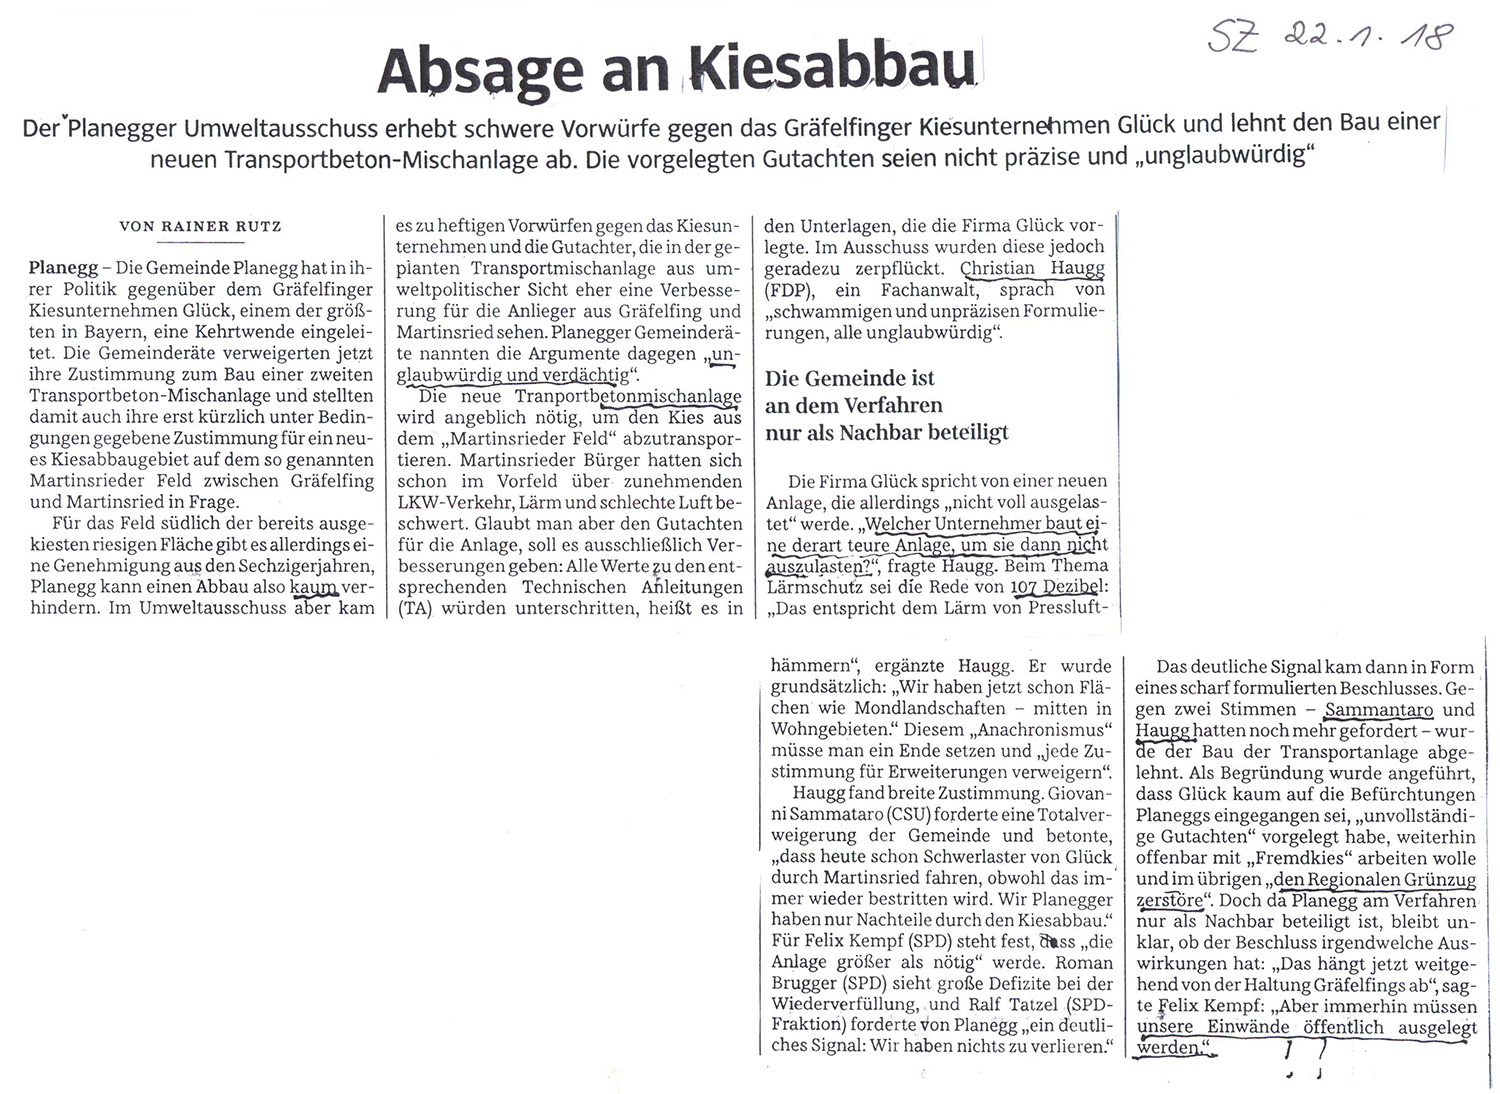 Absage an Kiesabbau